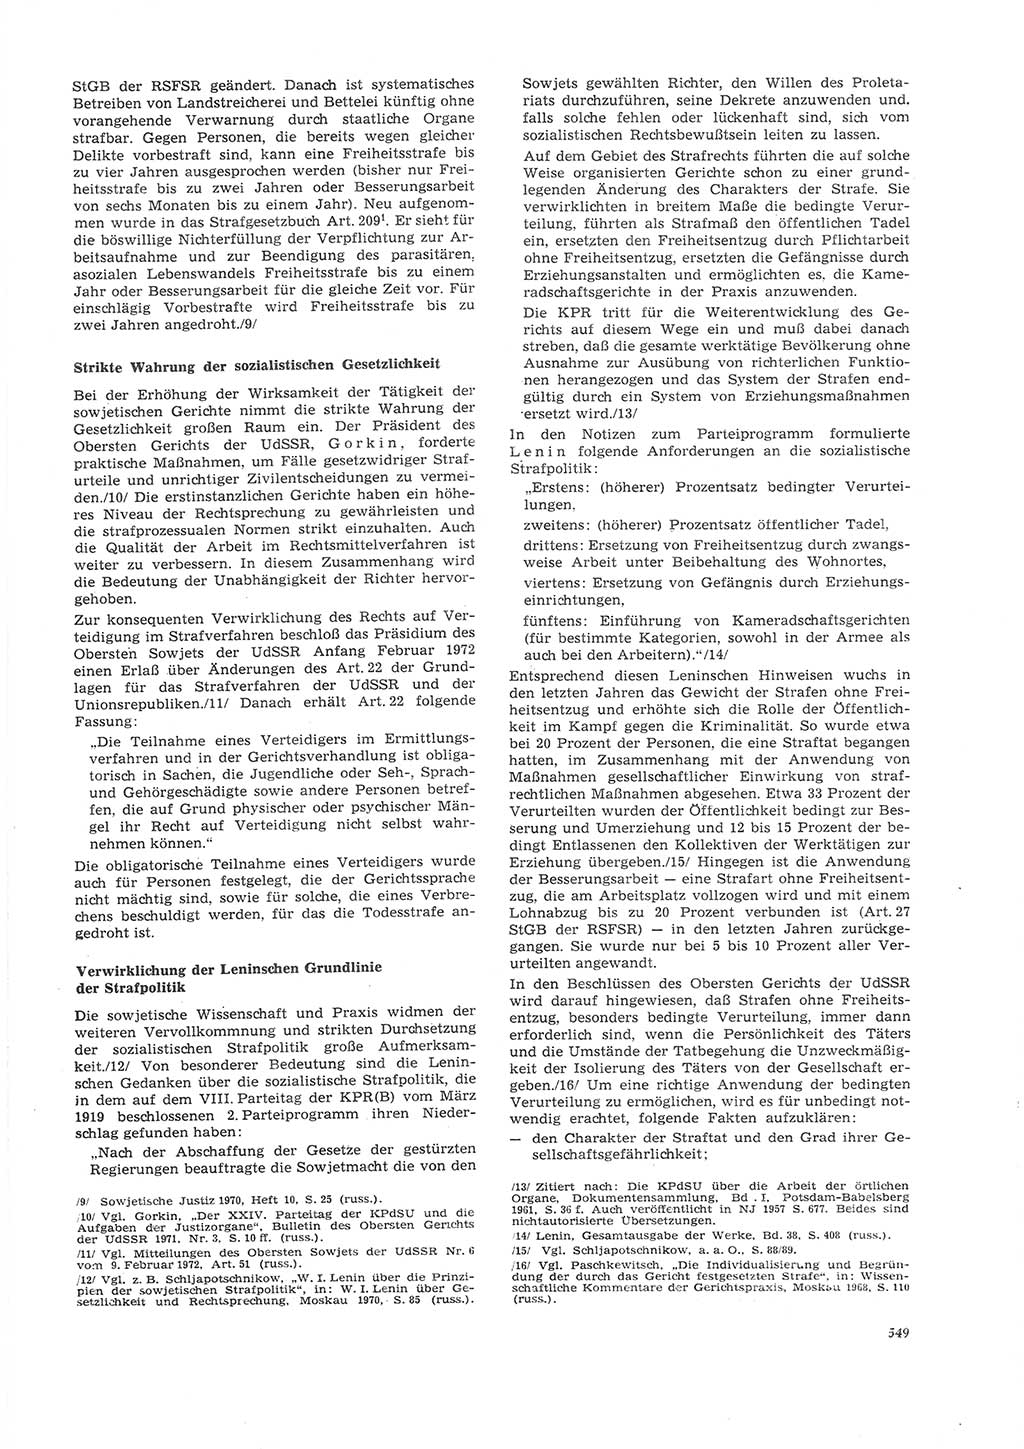 Neue Justiz (NJ), Zeitschrift für Recht und Rechtswissenschaft [Deutsche Demokratische Republik (DDR)], 26. Jahrgang 1972, Seite 549 (NJ DDR 1972, S. 549)